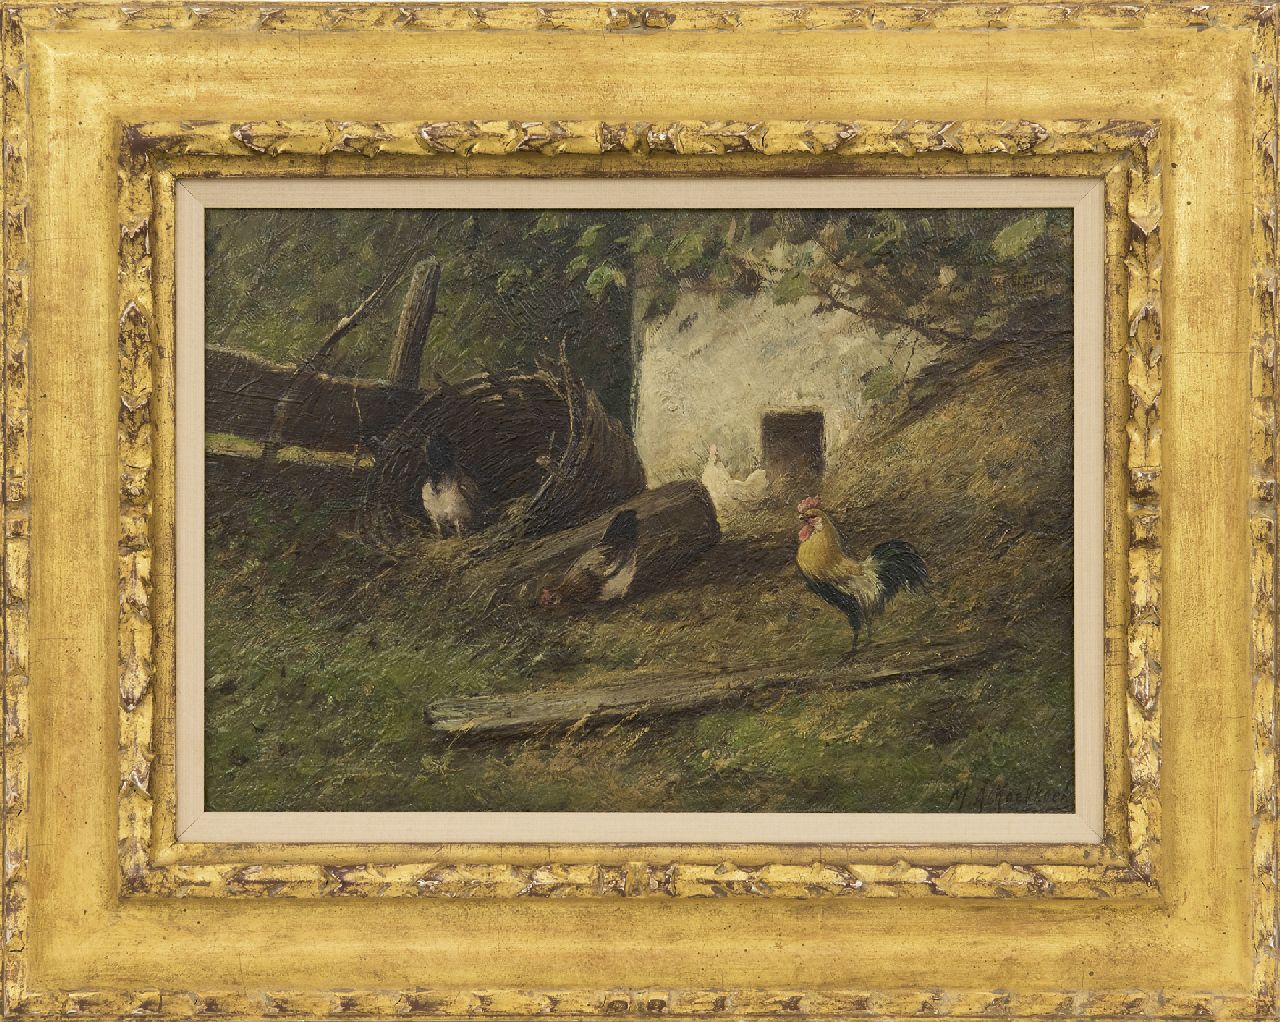 Koekkoek II M.A.  | Marinus Adrianus Koekkoek II | Schilderijen te koop aangeboden | Haan en kippen bij een broedkorf, olieverf op doek 24,4 x 34,5 cm, gesigneerd rechtsonder